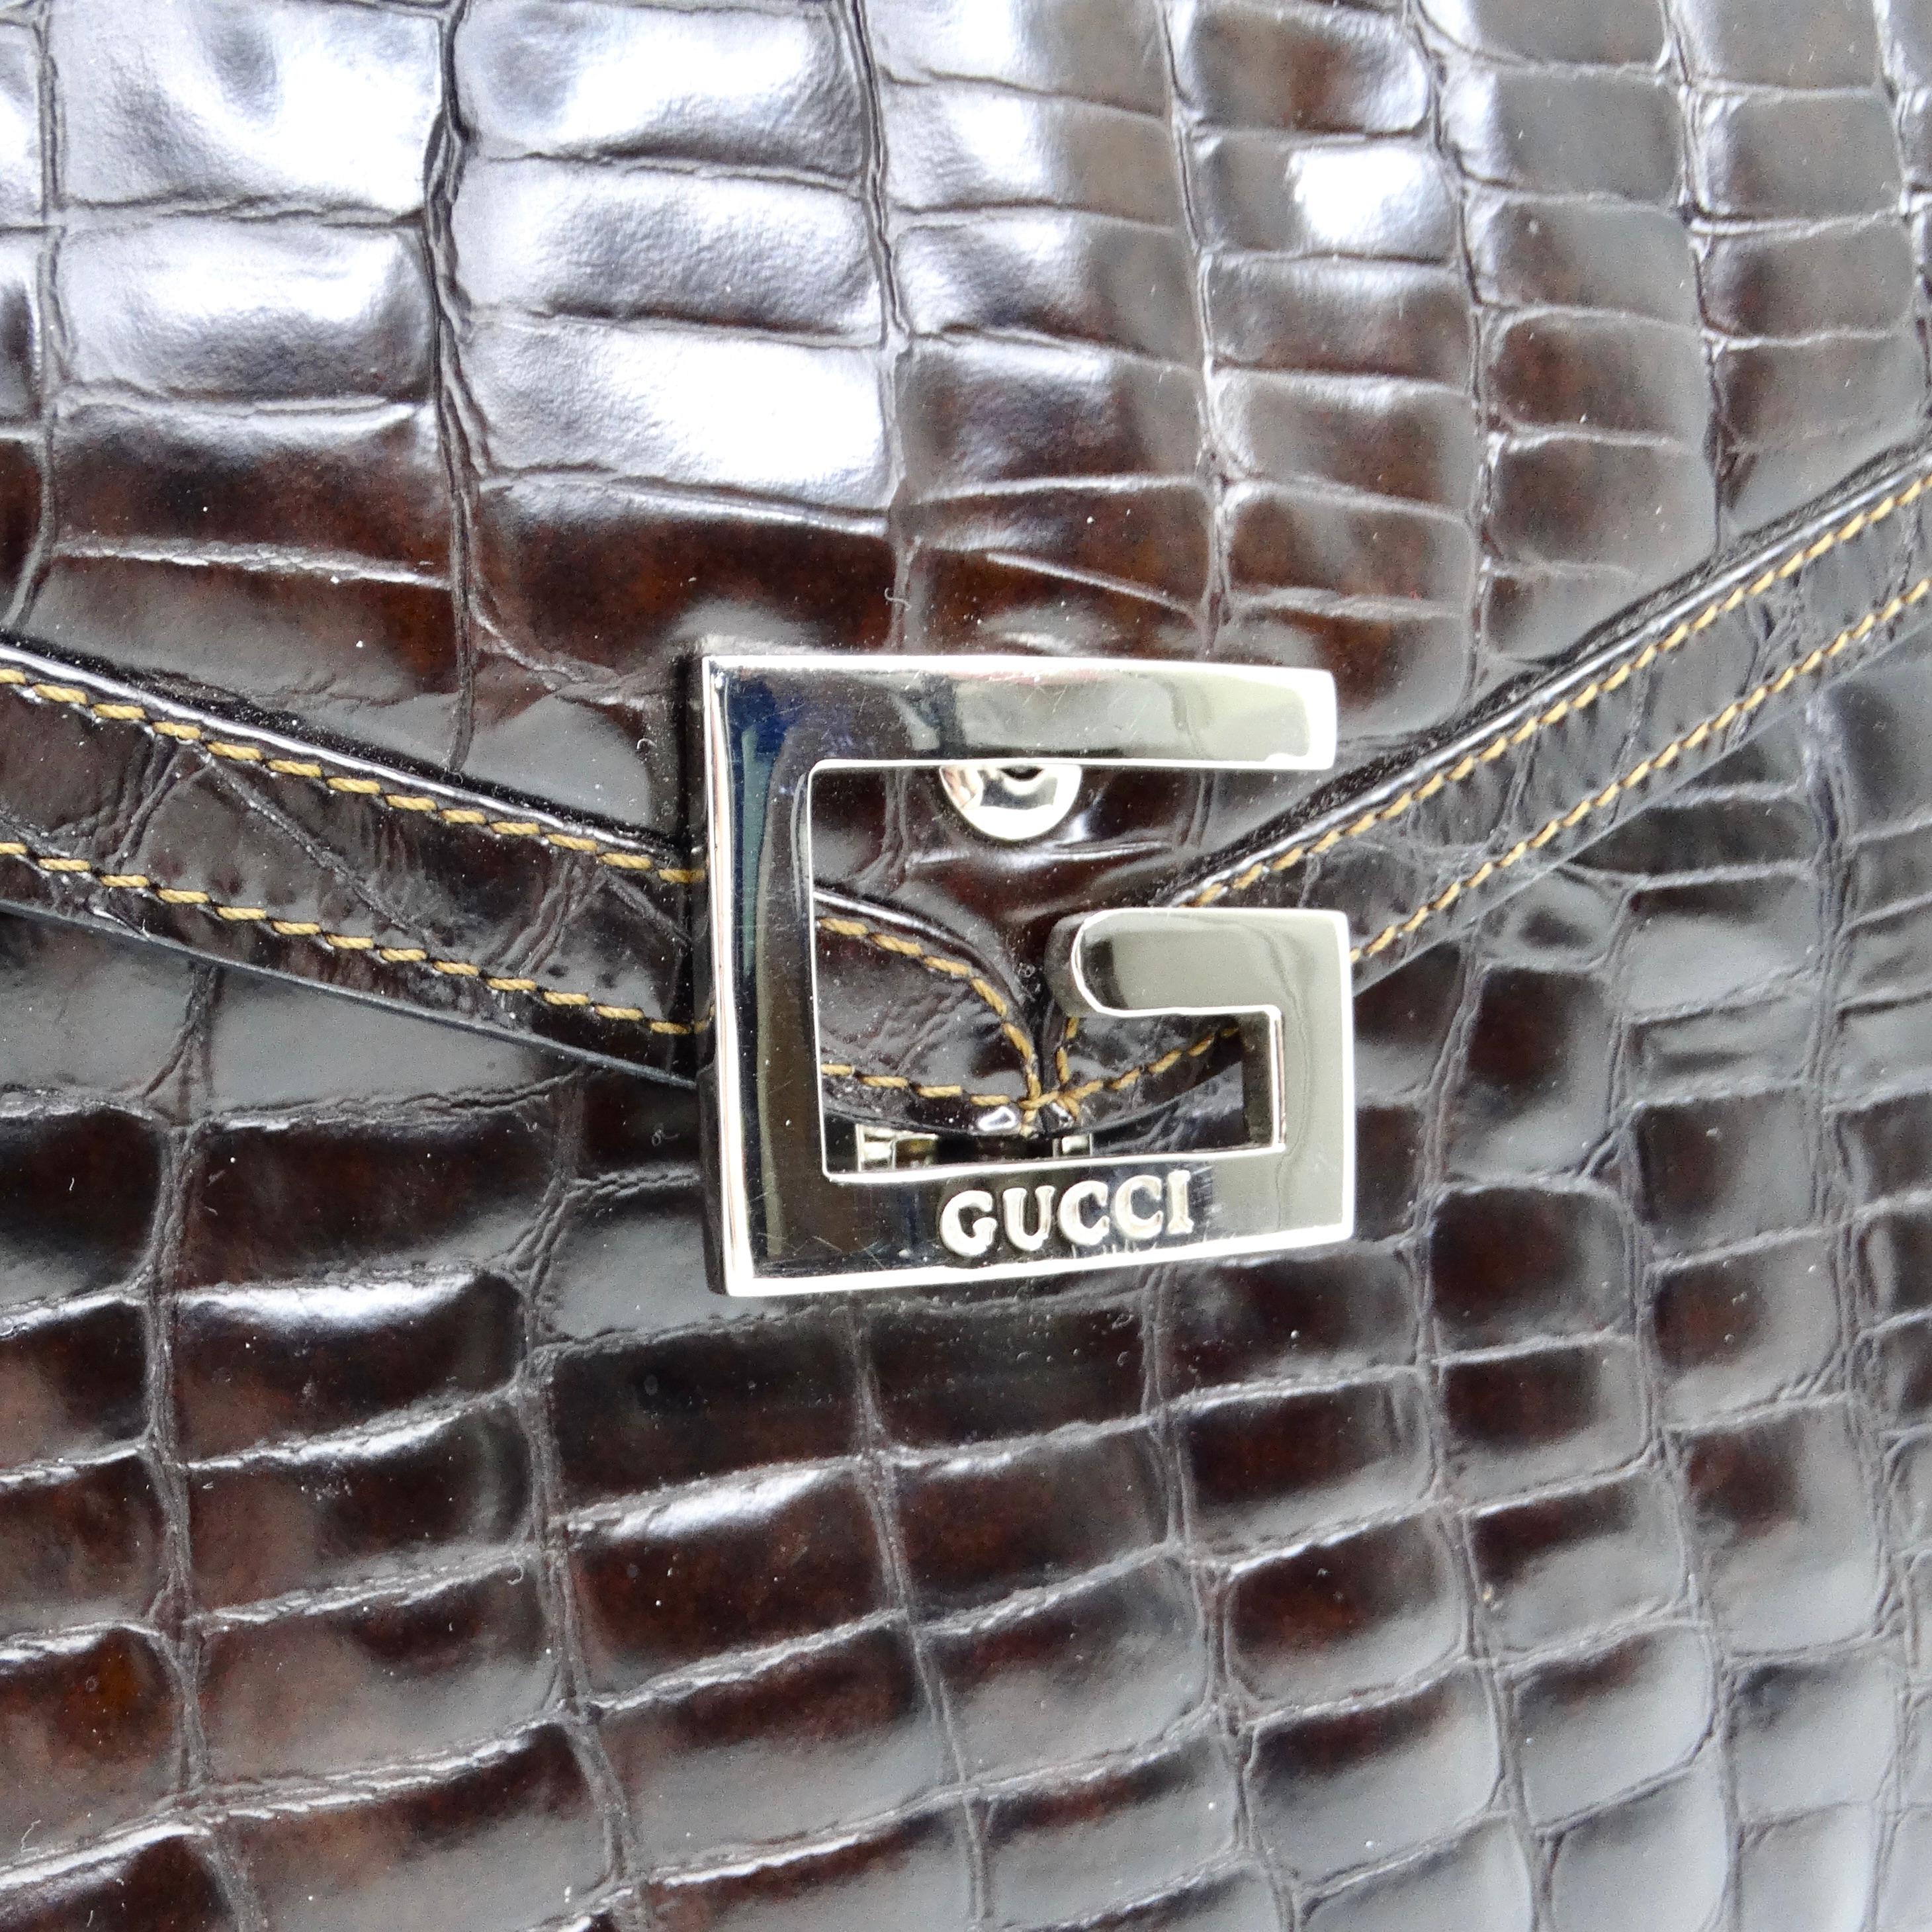 Die Gucci 1980s Alligator Embossed Leather Handbag ist ein luxuriöses und anspruchsvolles Accessoire, das jedem Ensemble einen Hauch von Eleganz verleiht. Die aus braunem Leder mit Alligatorprägung gefertigte Handtasche mit oberem Griff strahlt